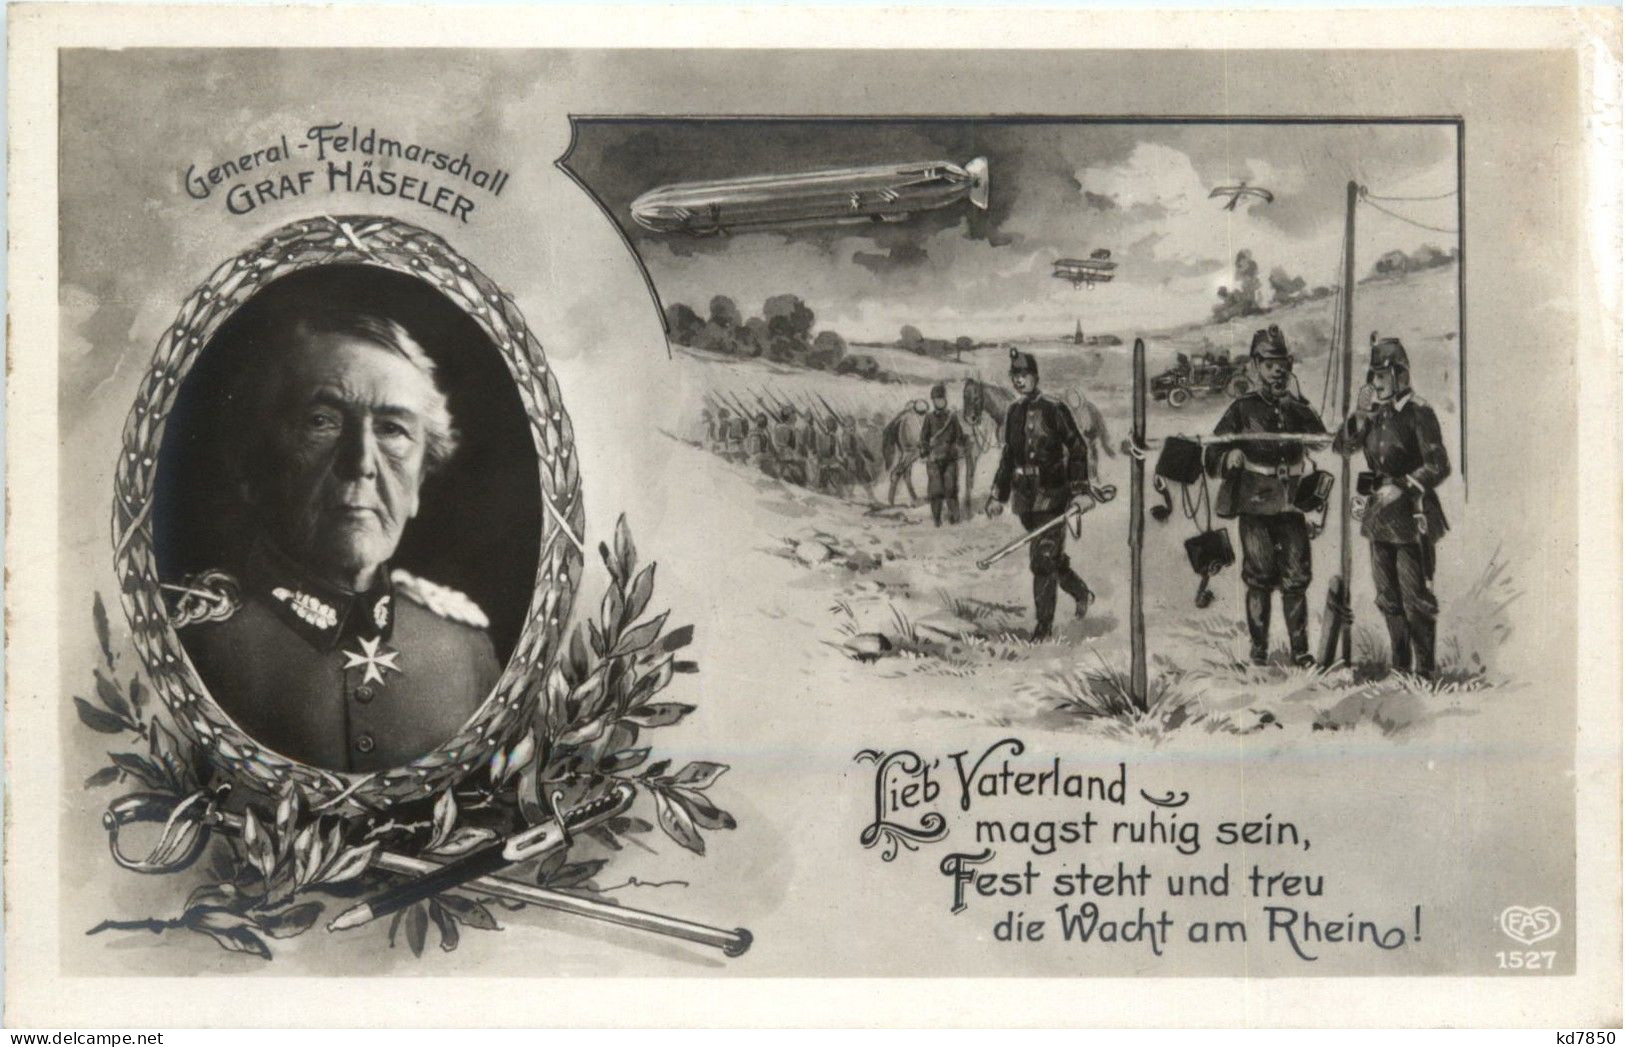 General Feldmarschall Graf Häseler - Zeppelin - Politicians & Soldiers